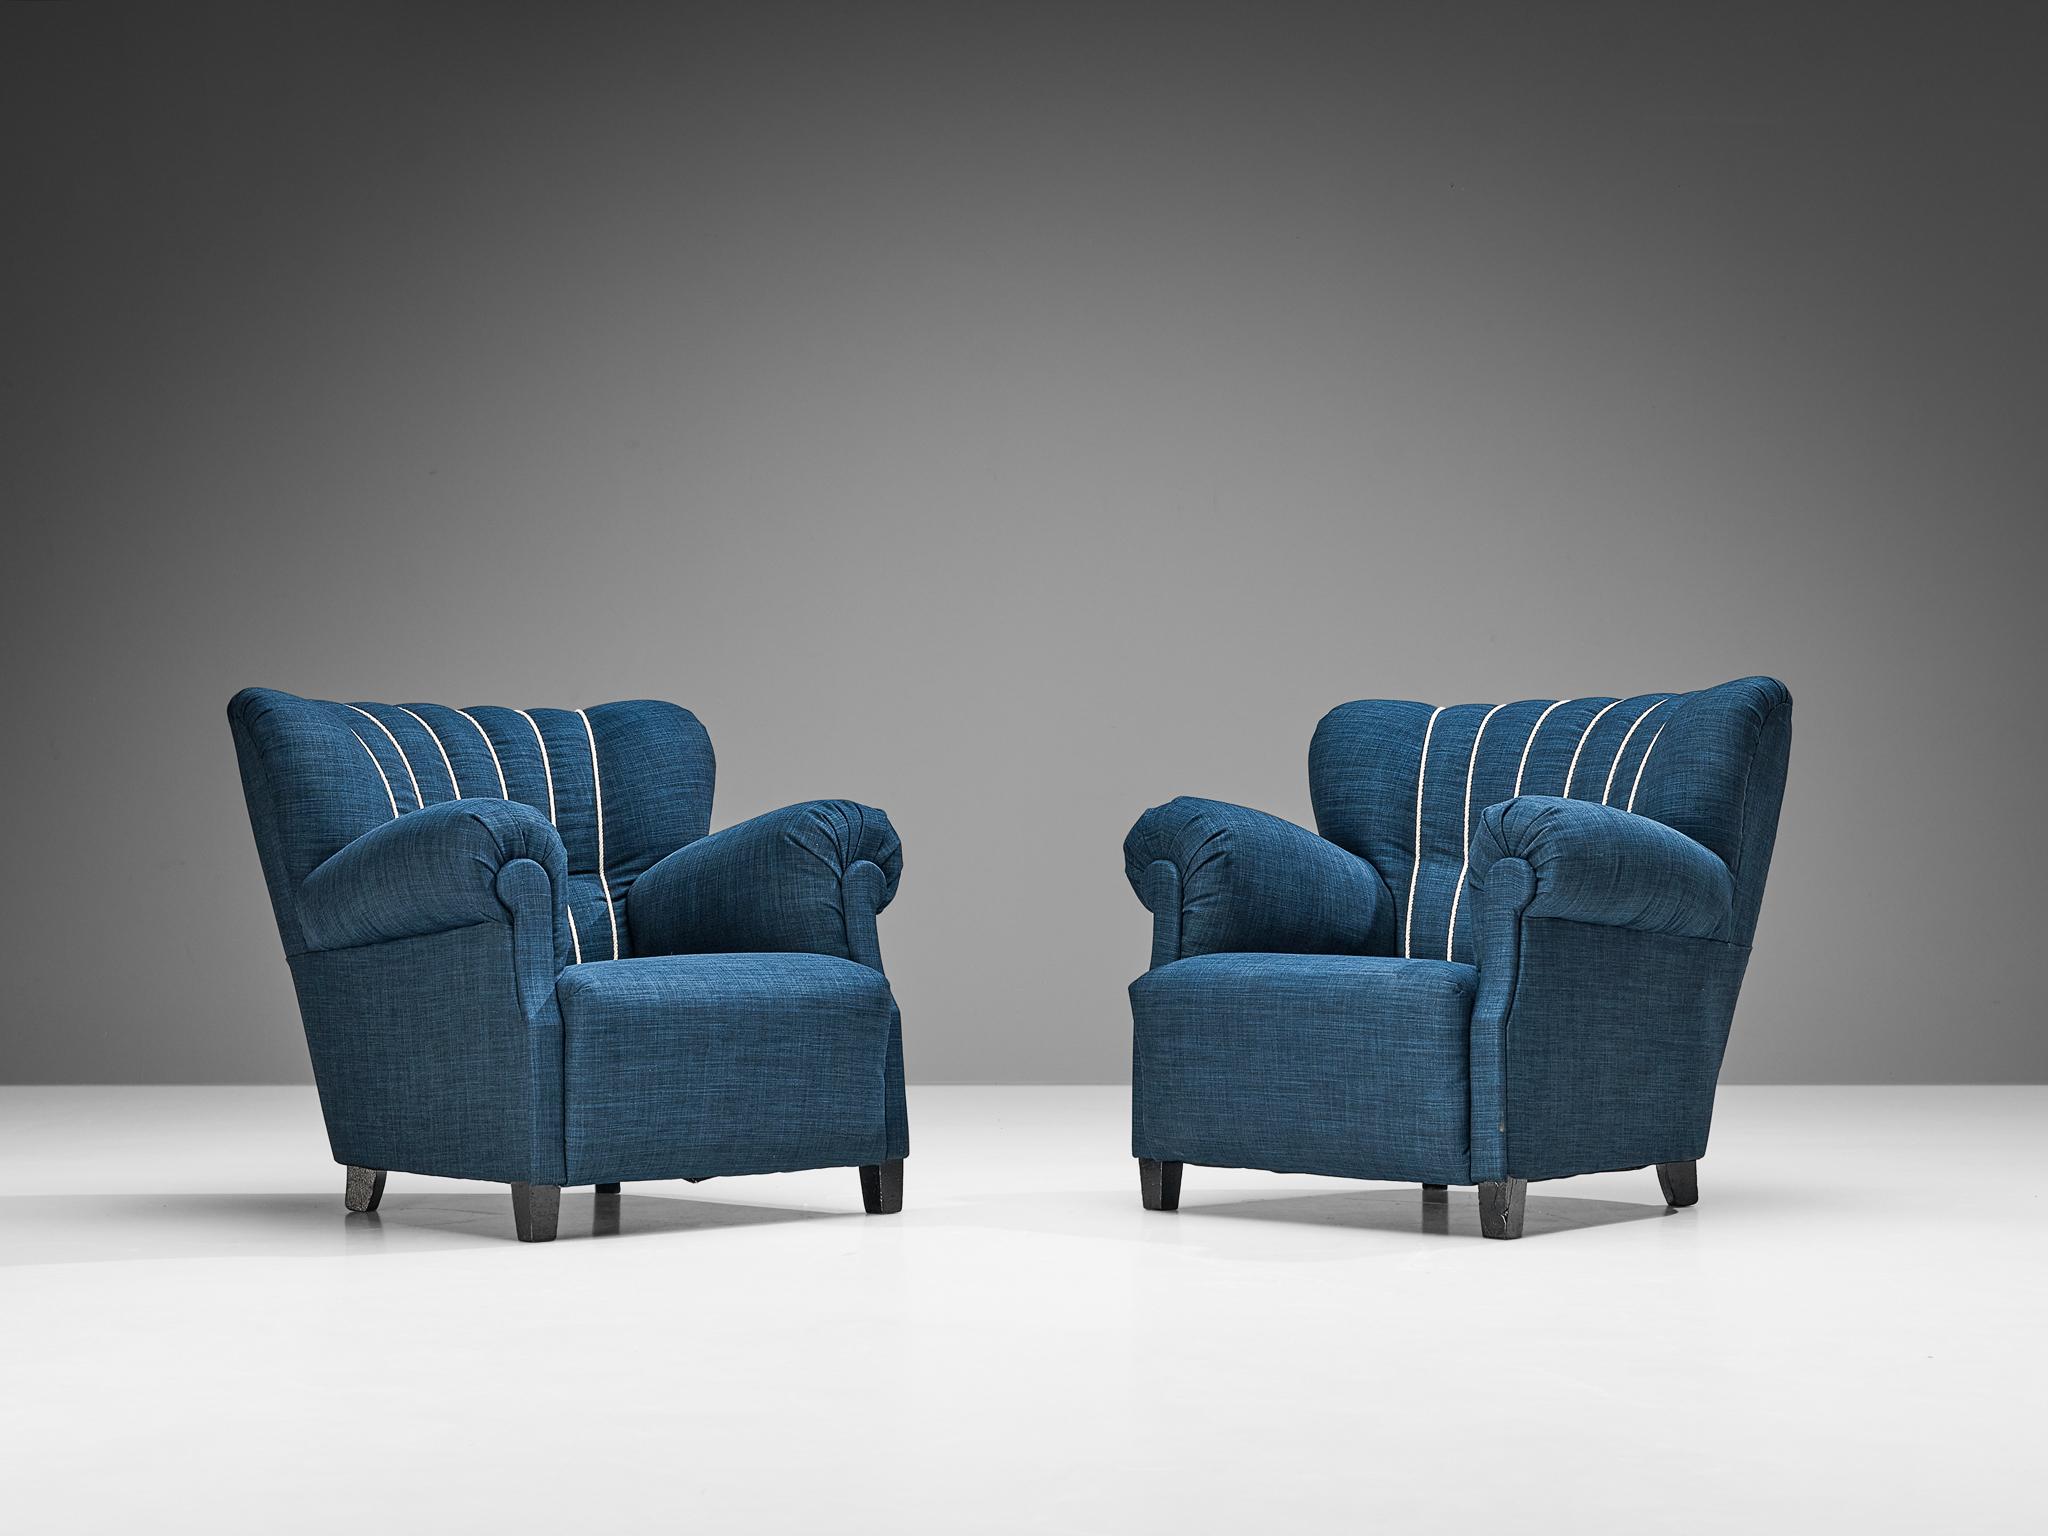 Paire de chaises longues, bois et tapisserie bleue, Europe, années 1940

Cette belle paire de chaises de salon respire sans aucun doute la fin de la période art déco des années 1940. Le design présente une certaine esthétique théâtrale avec des